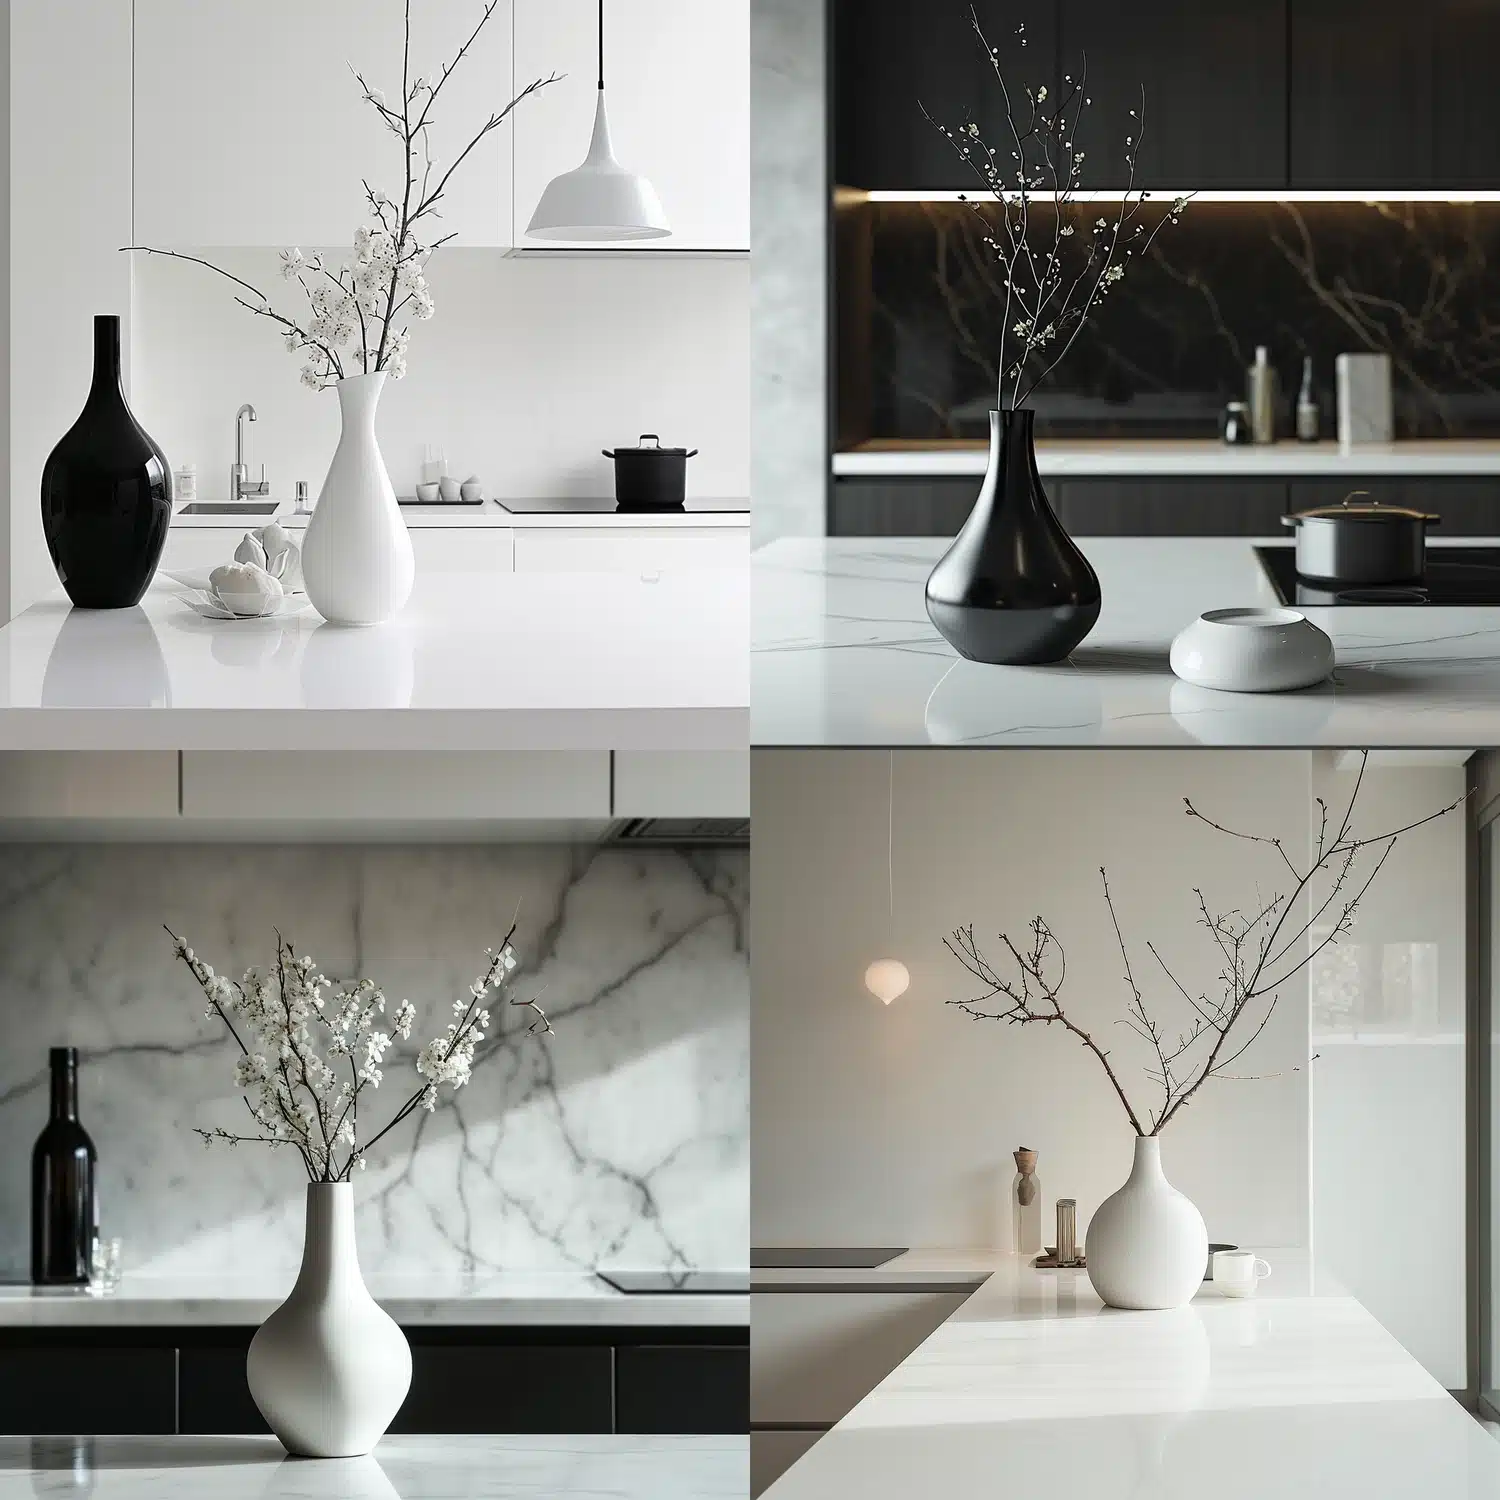 Minimalistische Küche mit eleganter Vase und Zweigen als Dekor. Das Bild soll zeigen, wie reduzierte Dekoration in einer minimalistischen Küche stilvolle Akzente setzen kann.